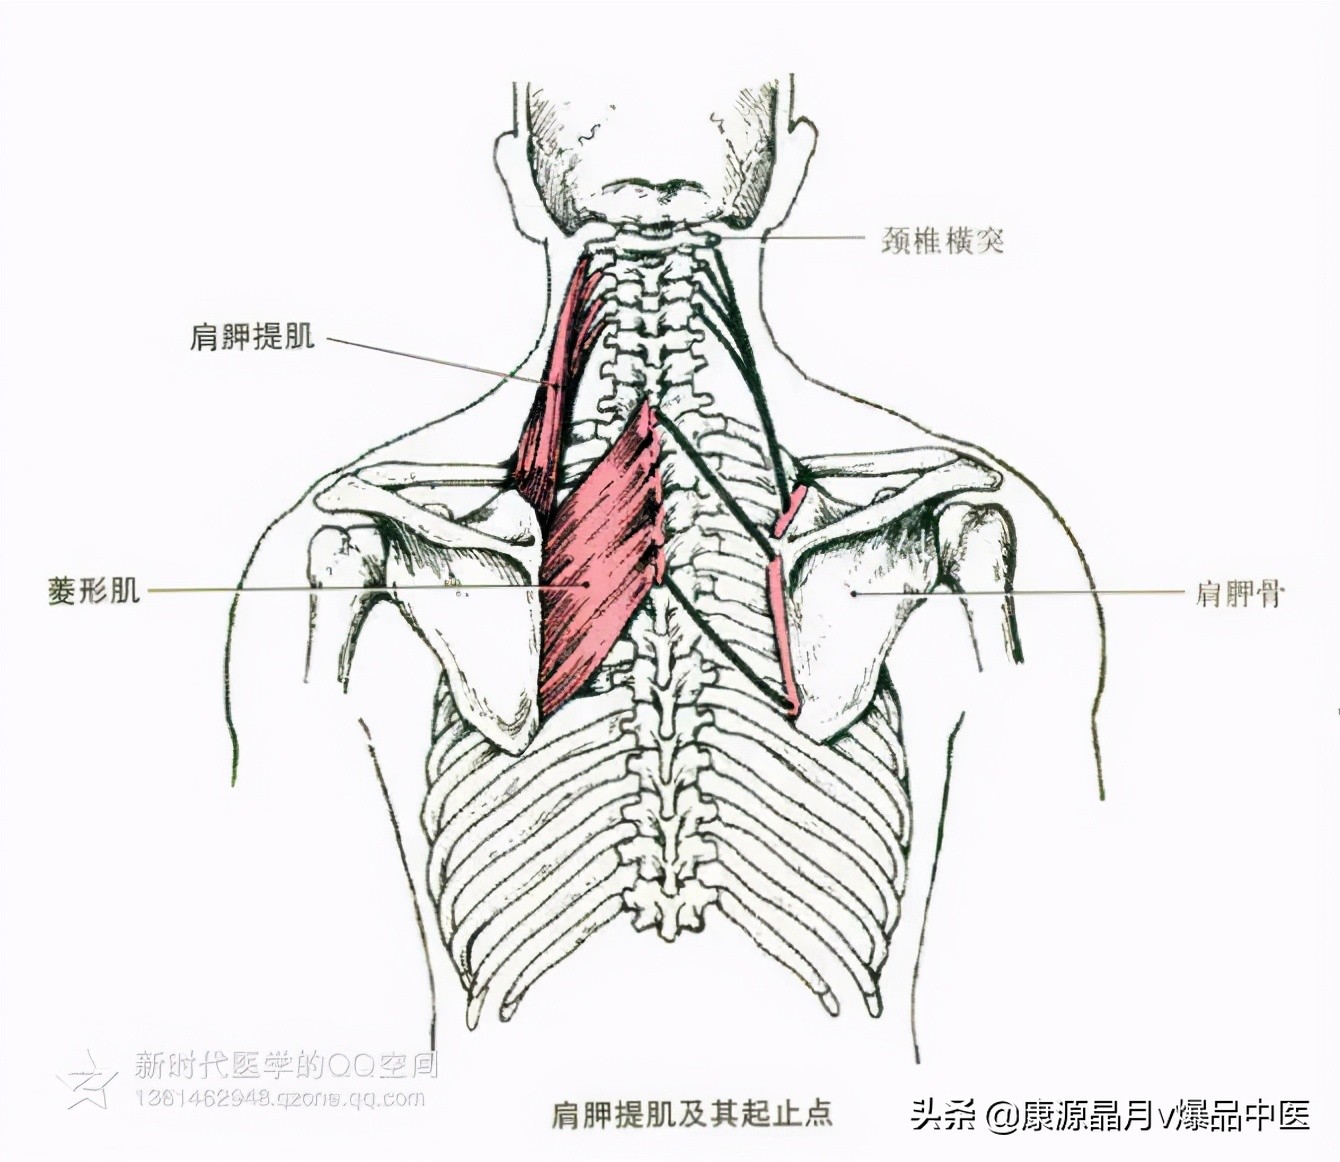 腰痛的根本原因，呼吸的训练。多裂肌是用来稳定脊柱的肌肉没有动作能训练，除了每分每秒在使用的呼吸，所以又称为”呼吸”肌。靶向讲解，明白普拉提核心 ...